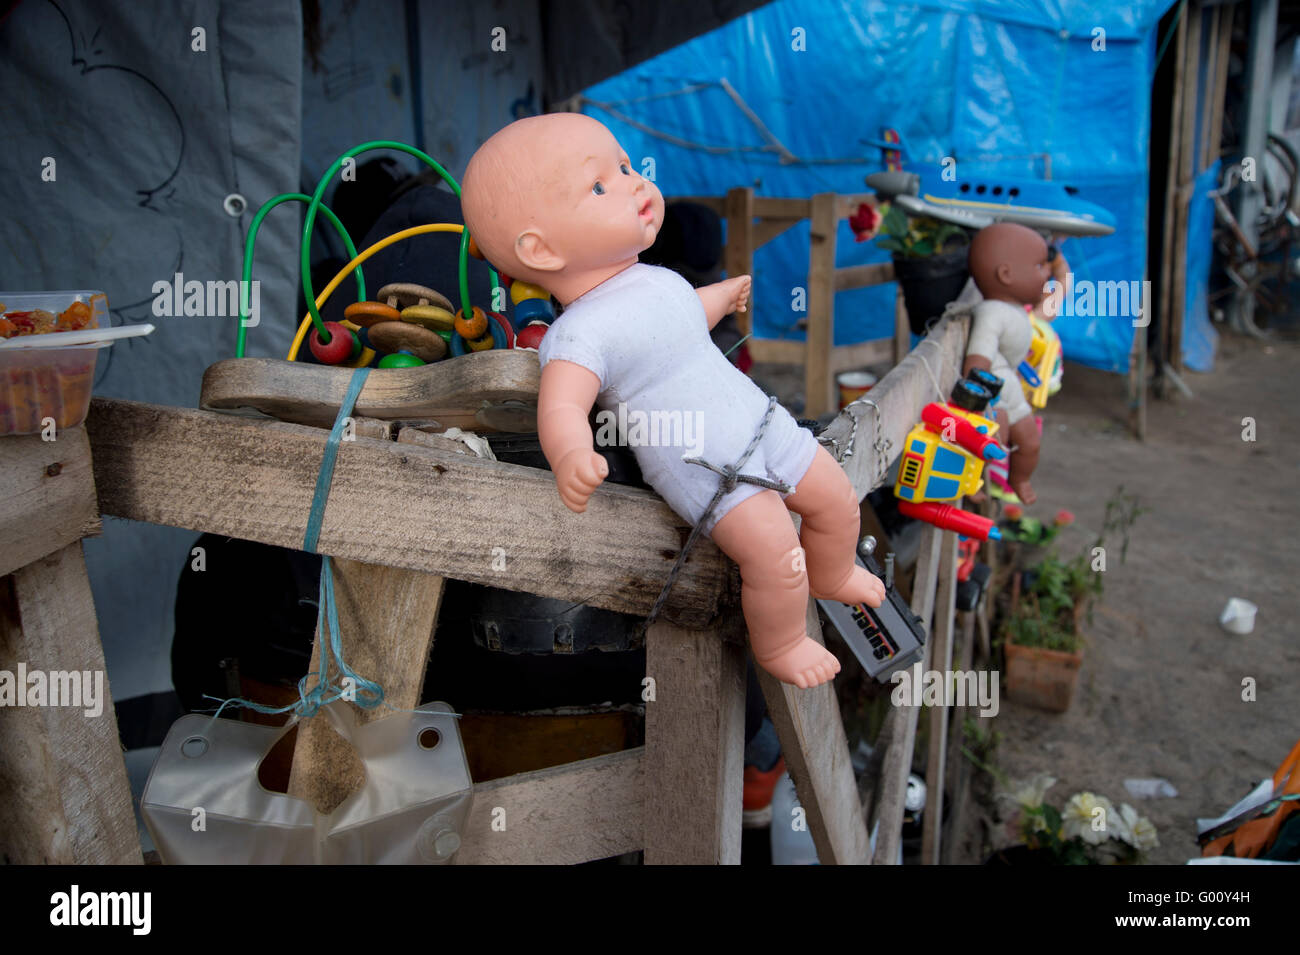 La France, Calais. 'Jungle' camp pour réfugiés. Certains soudanais ont décoré leur abri avec des jouets d'enfants. Banque D'Images